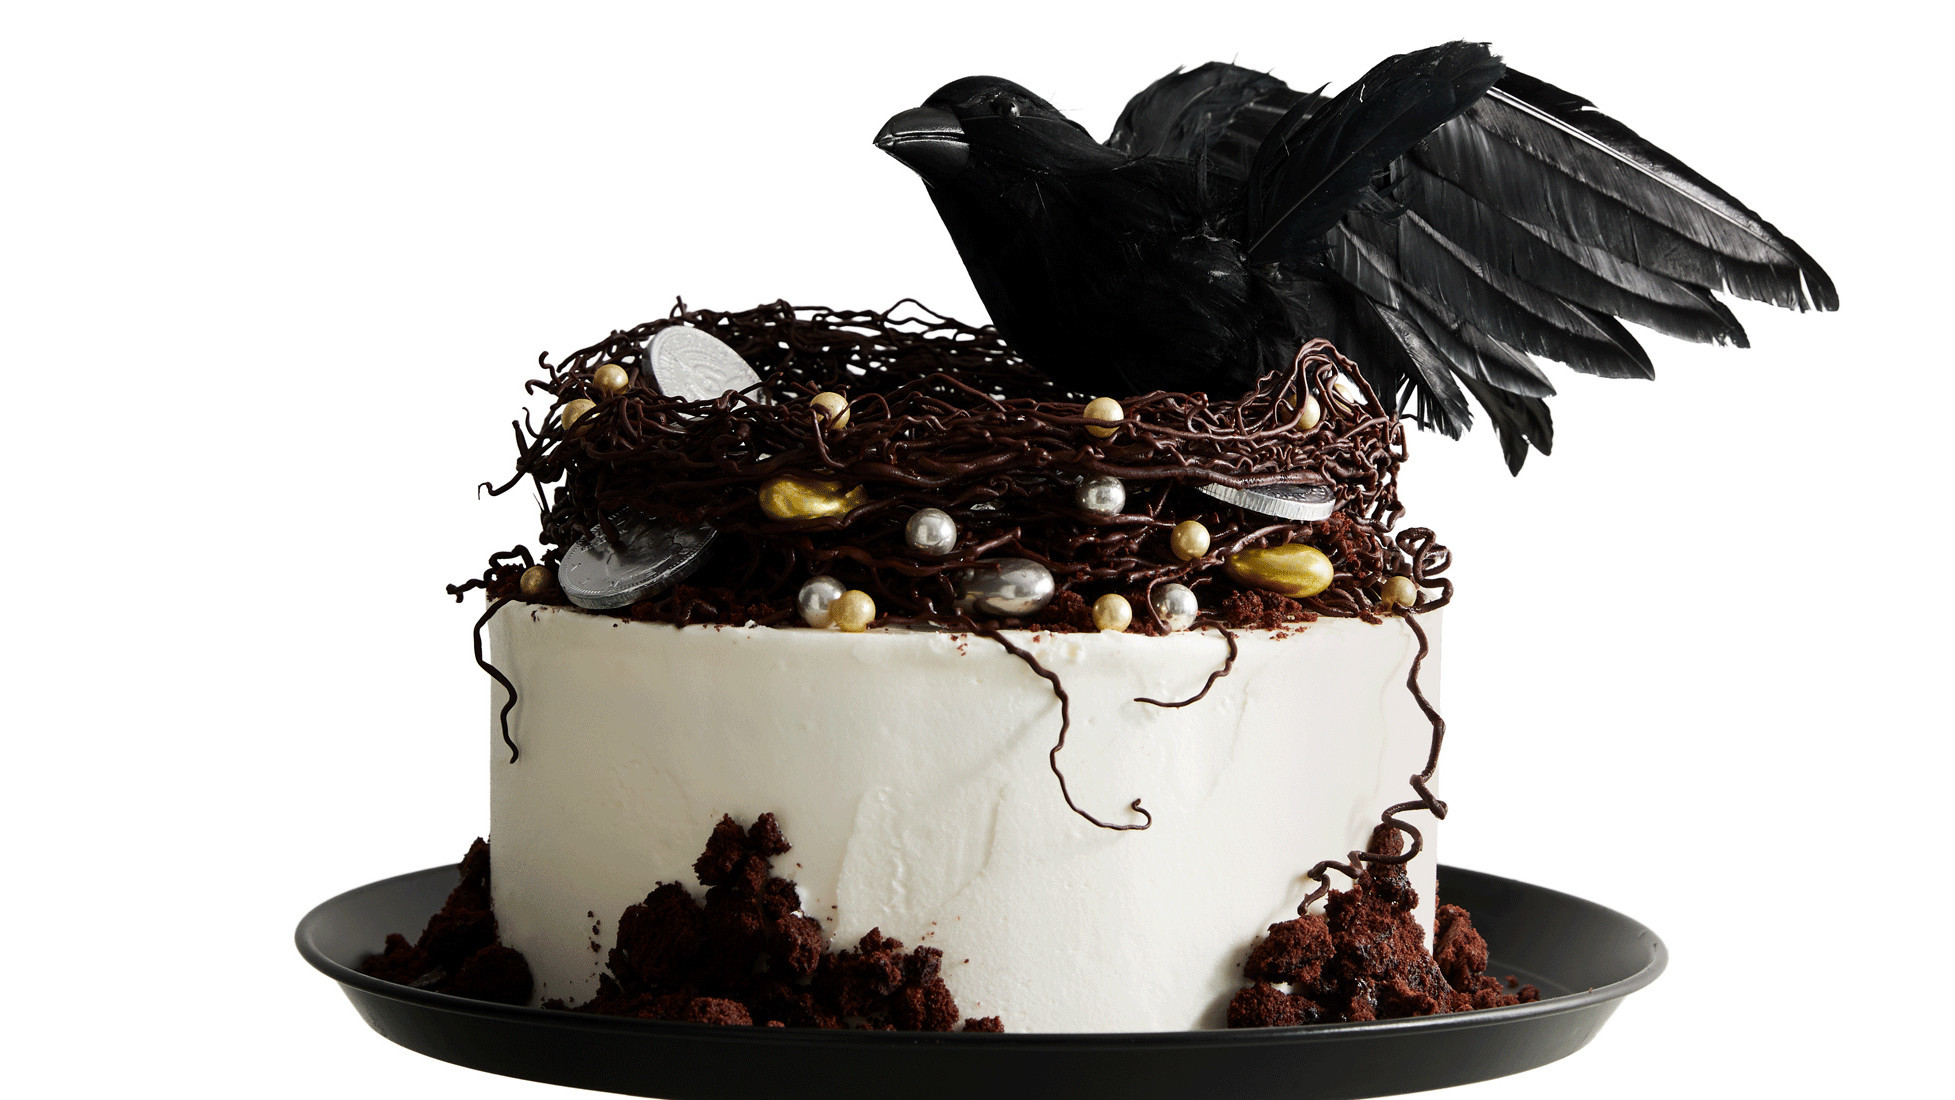 Raven's-Nest Cake